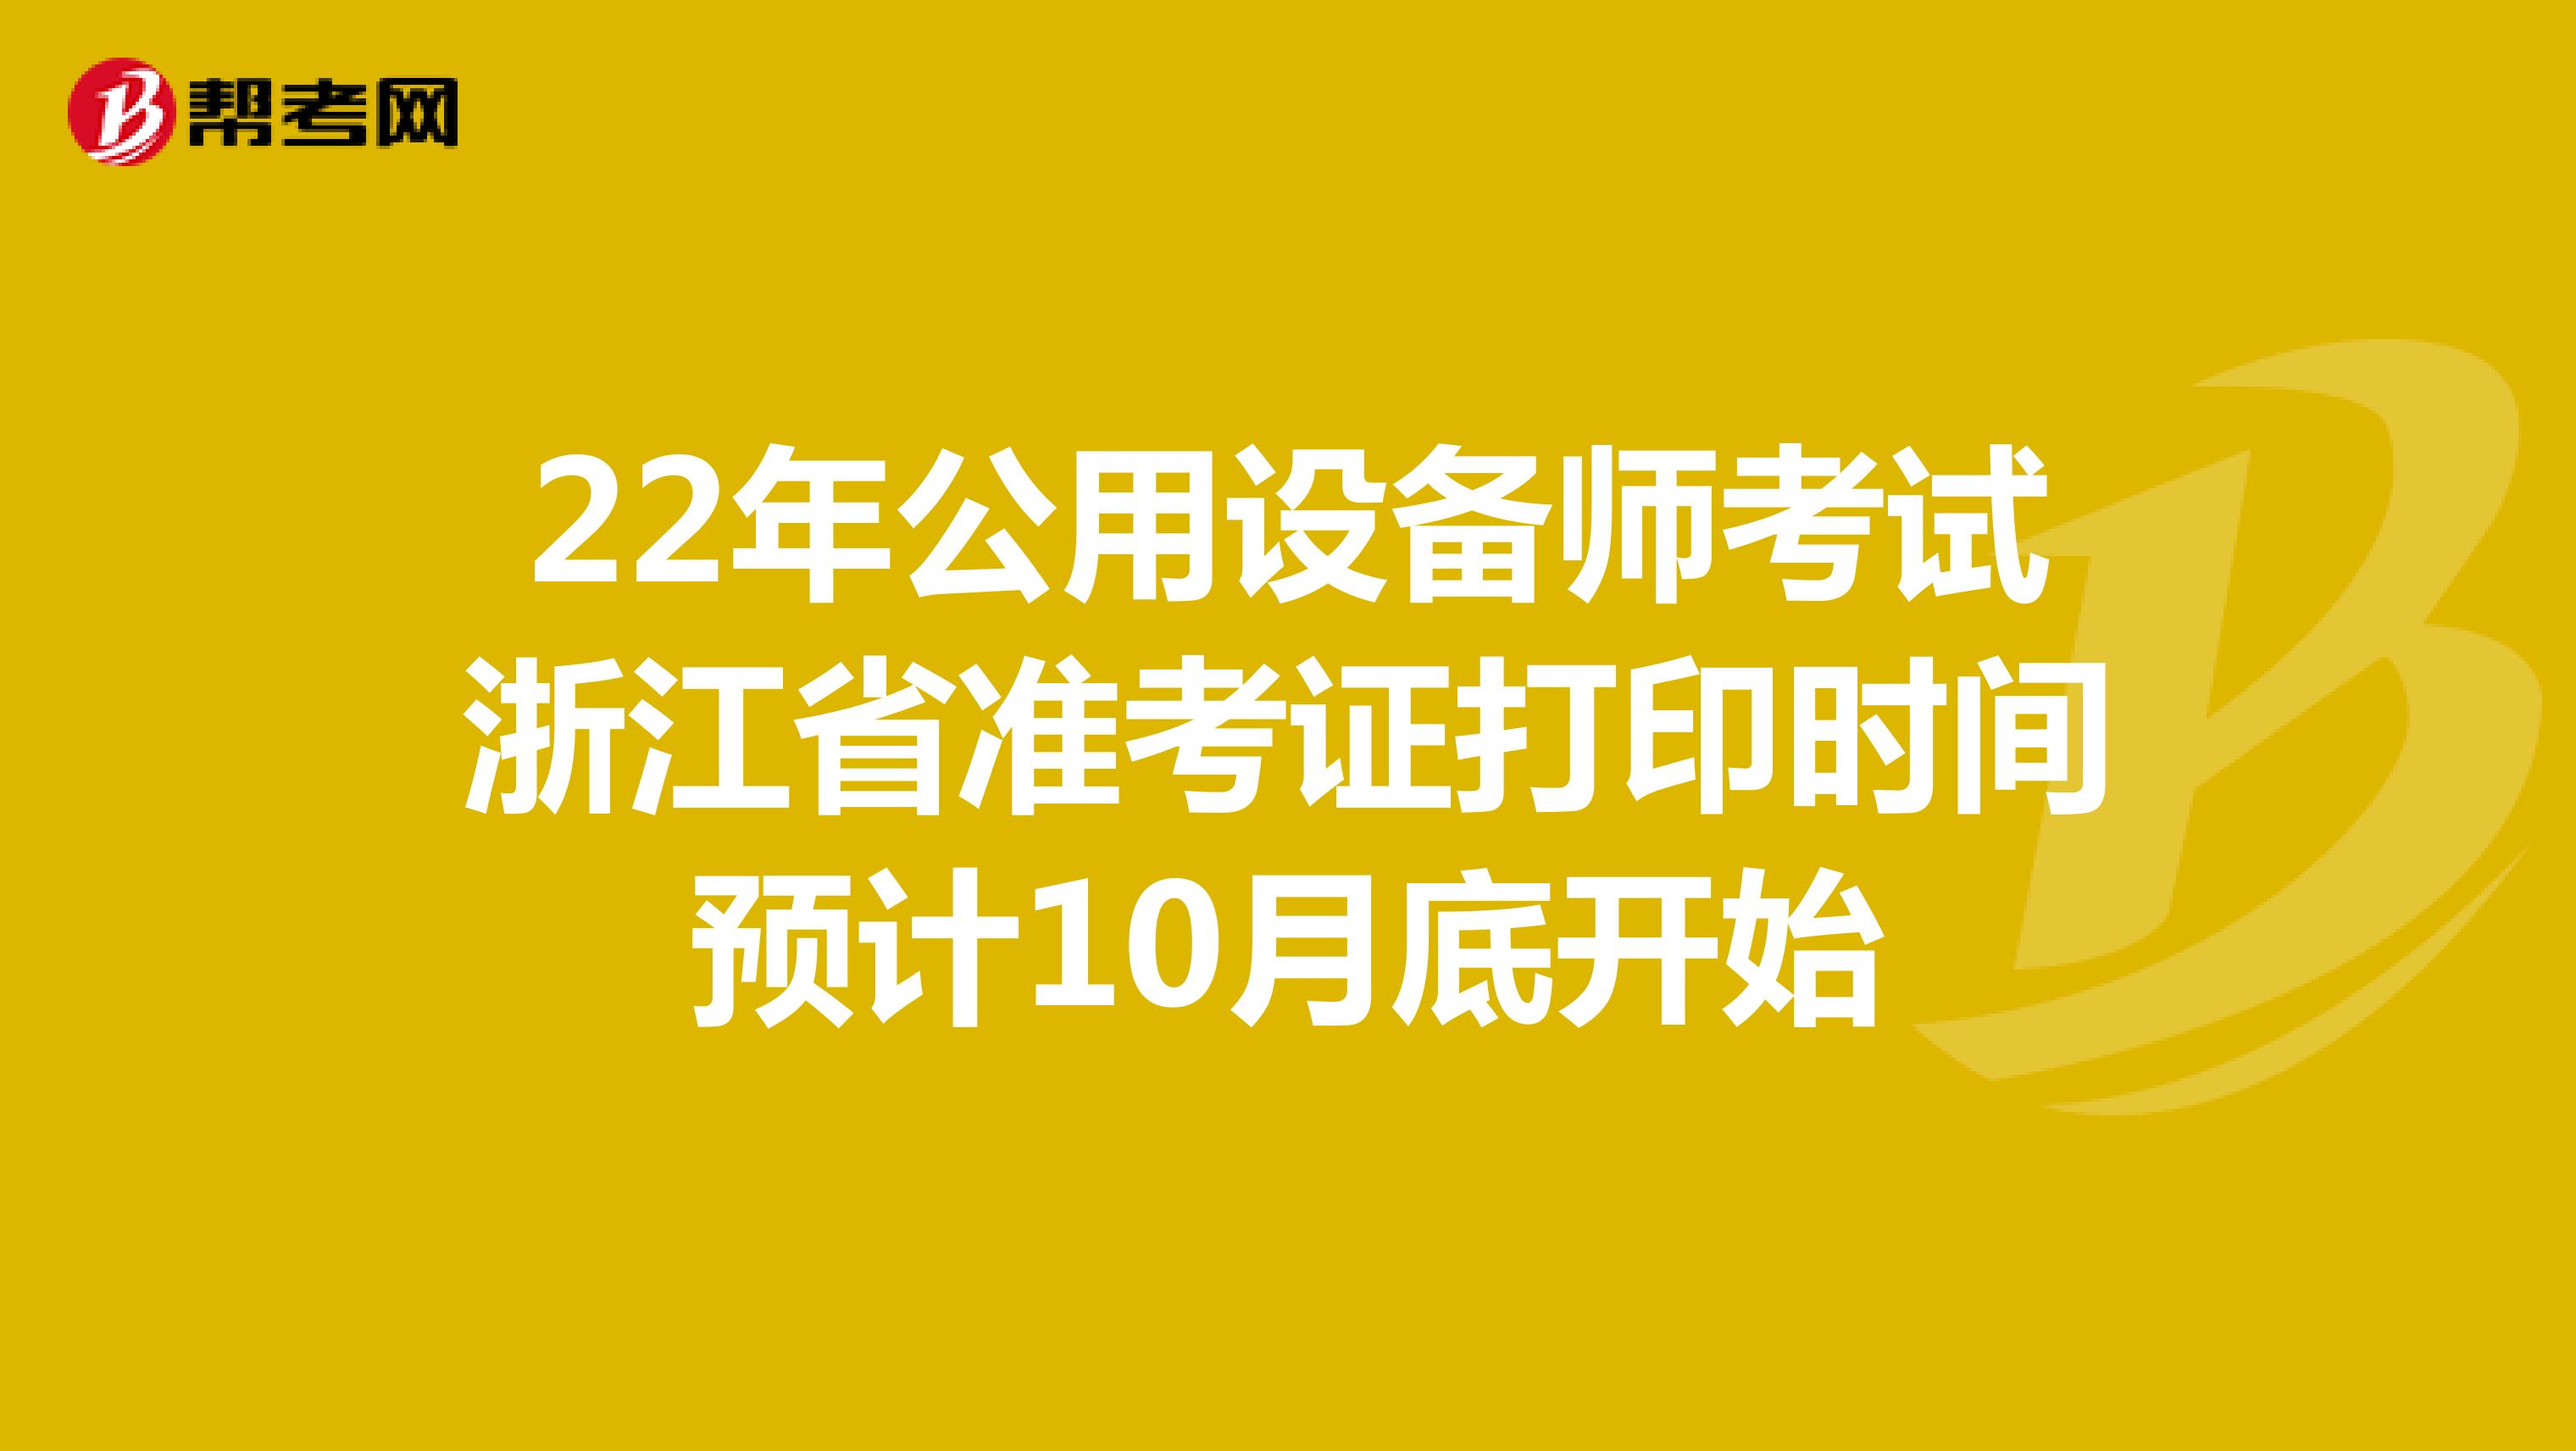 22年公用设备师考试浙江省准考证打印时间预计10月底开始